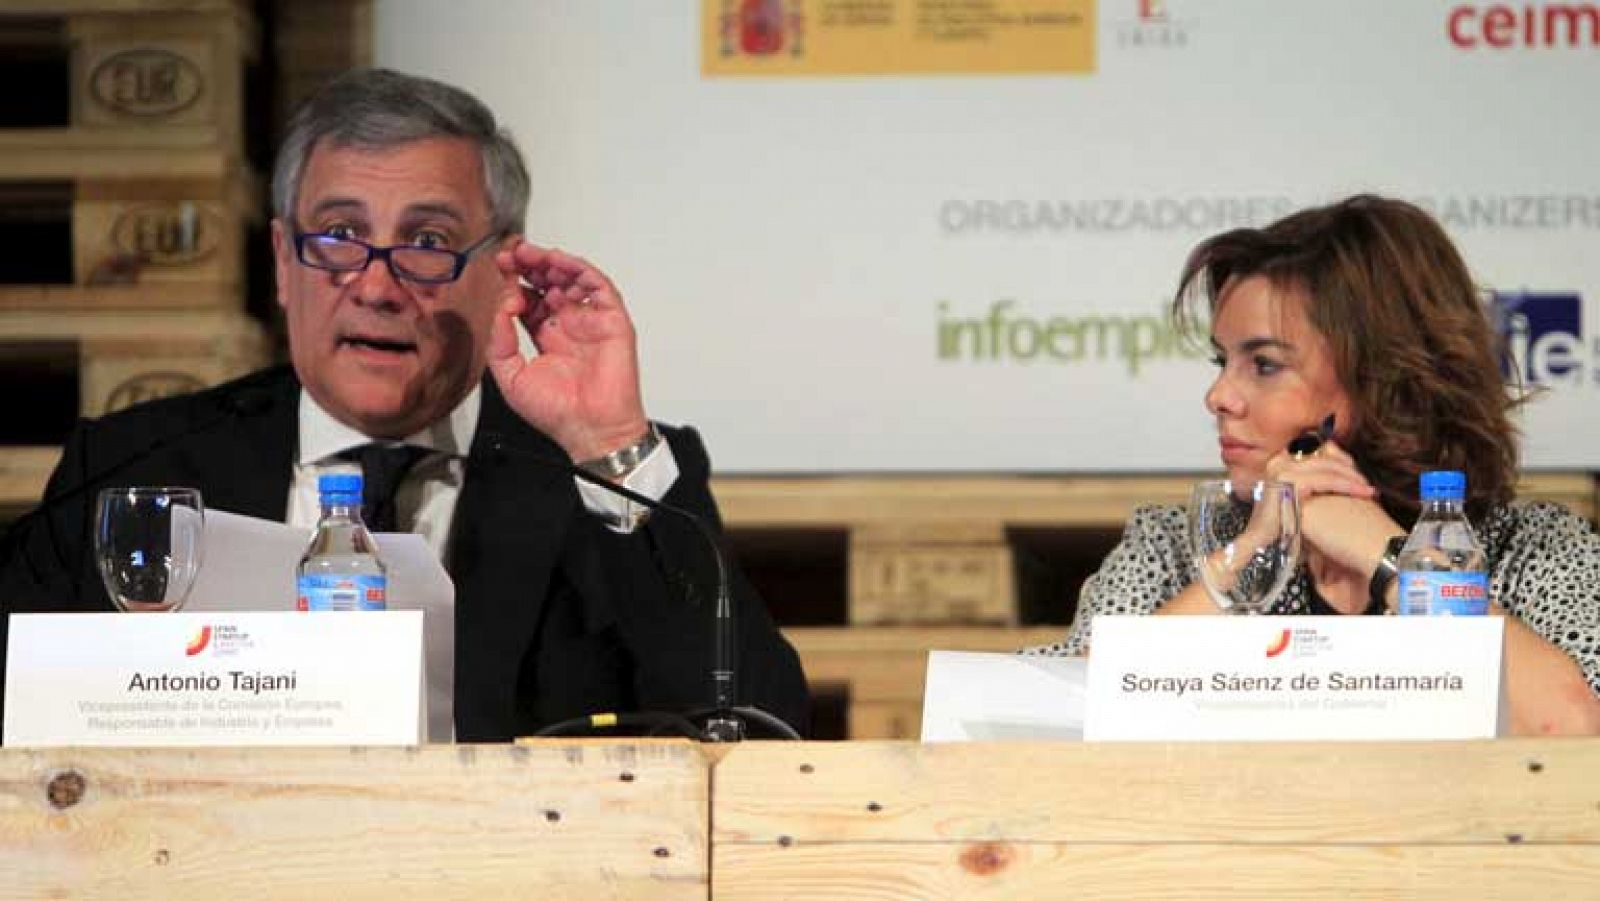 Regulará, según ha dicho la vicepresidenta Sáenz de Santamaría, la segunda oportunidad para los autónomos que fracasen. Y también creará un fondo de inversión para pymes.